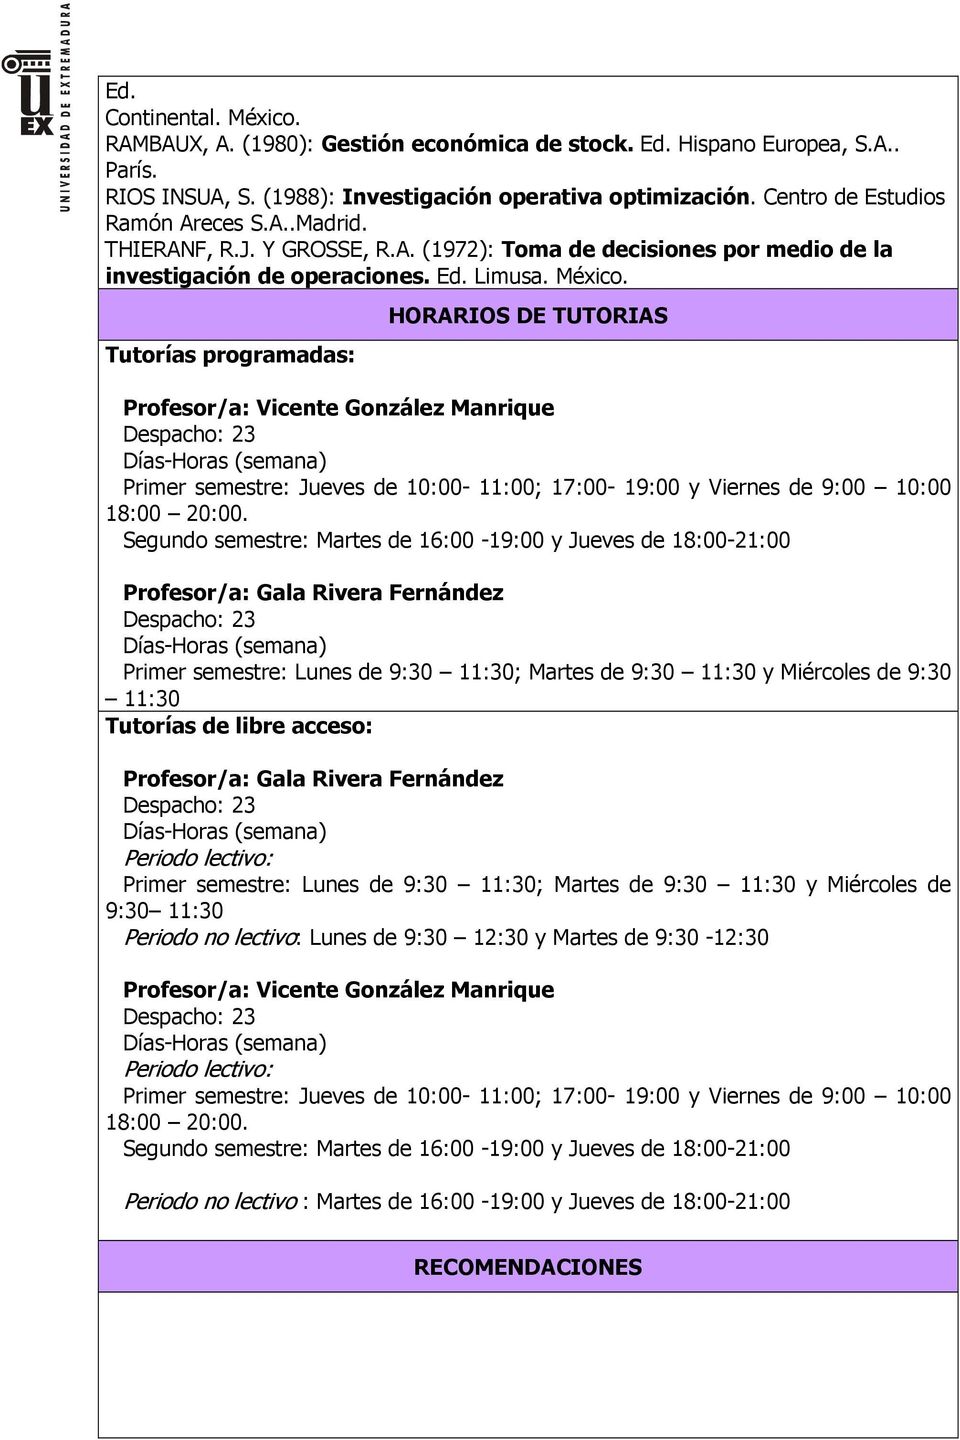 Tutorías programadas: HORARIOS DE TUTORIAS Profesor/a: Vicente González Manrique Primer semestre: Jueves de 10:00-11:00; 17:00-19:00 y Viernes de 9:00 10:00 18:00 20:00.